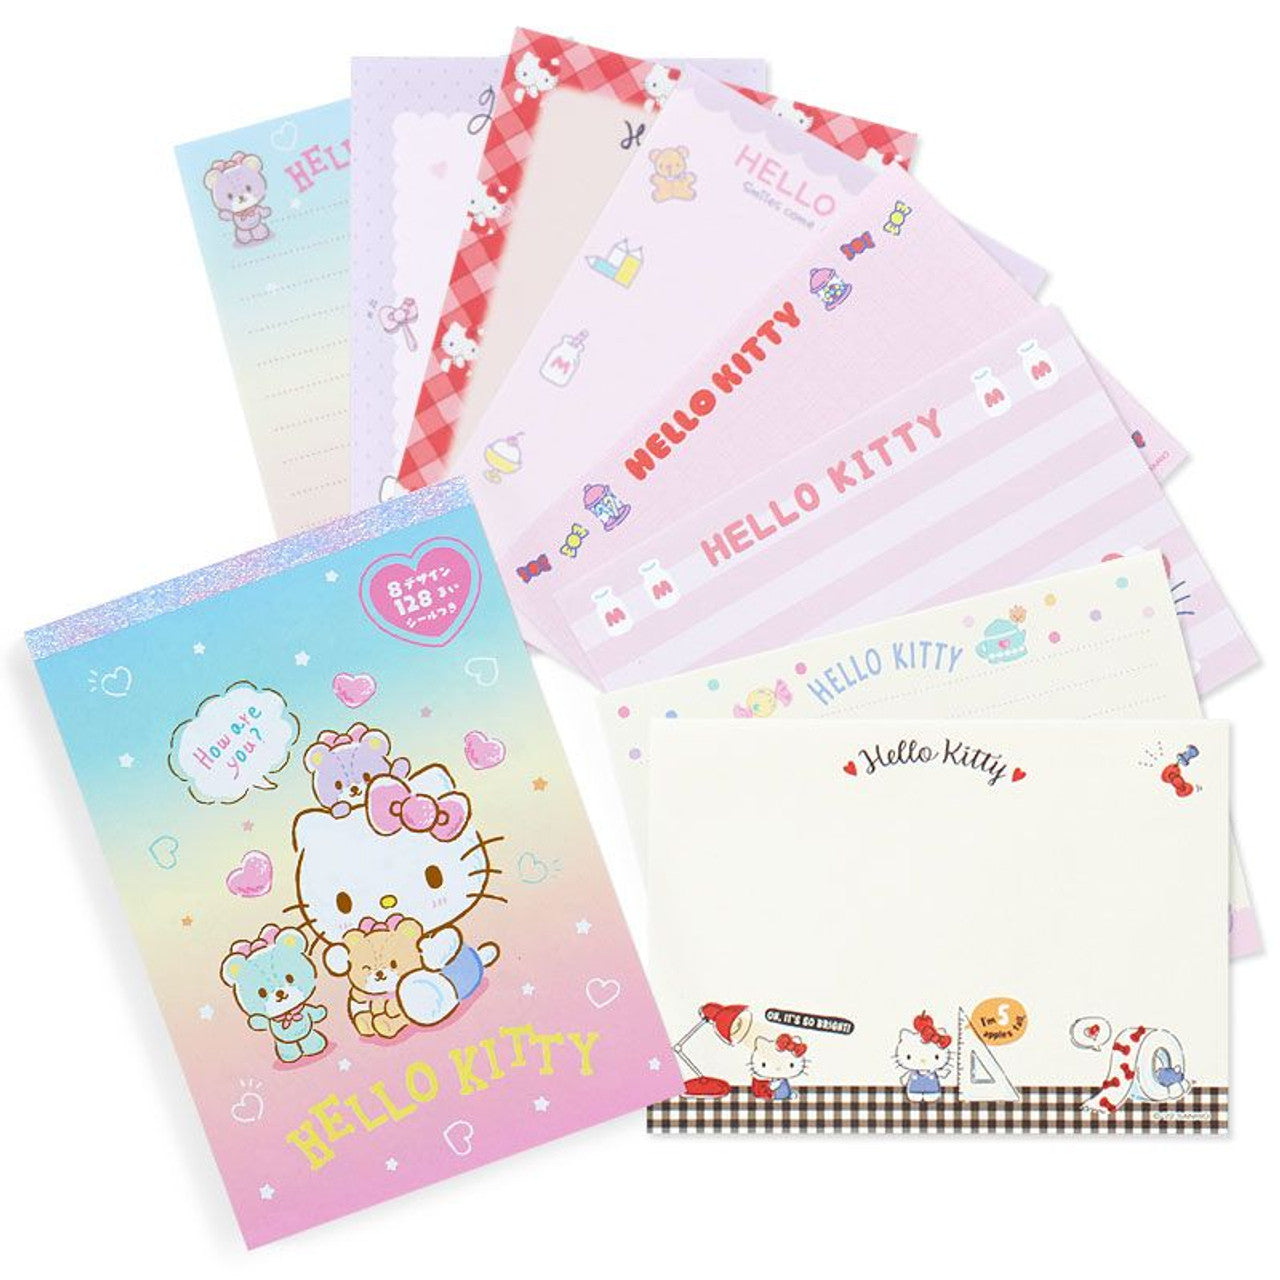 Sanrio 8 Design Memo Pad Hello Kitty (429881)